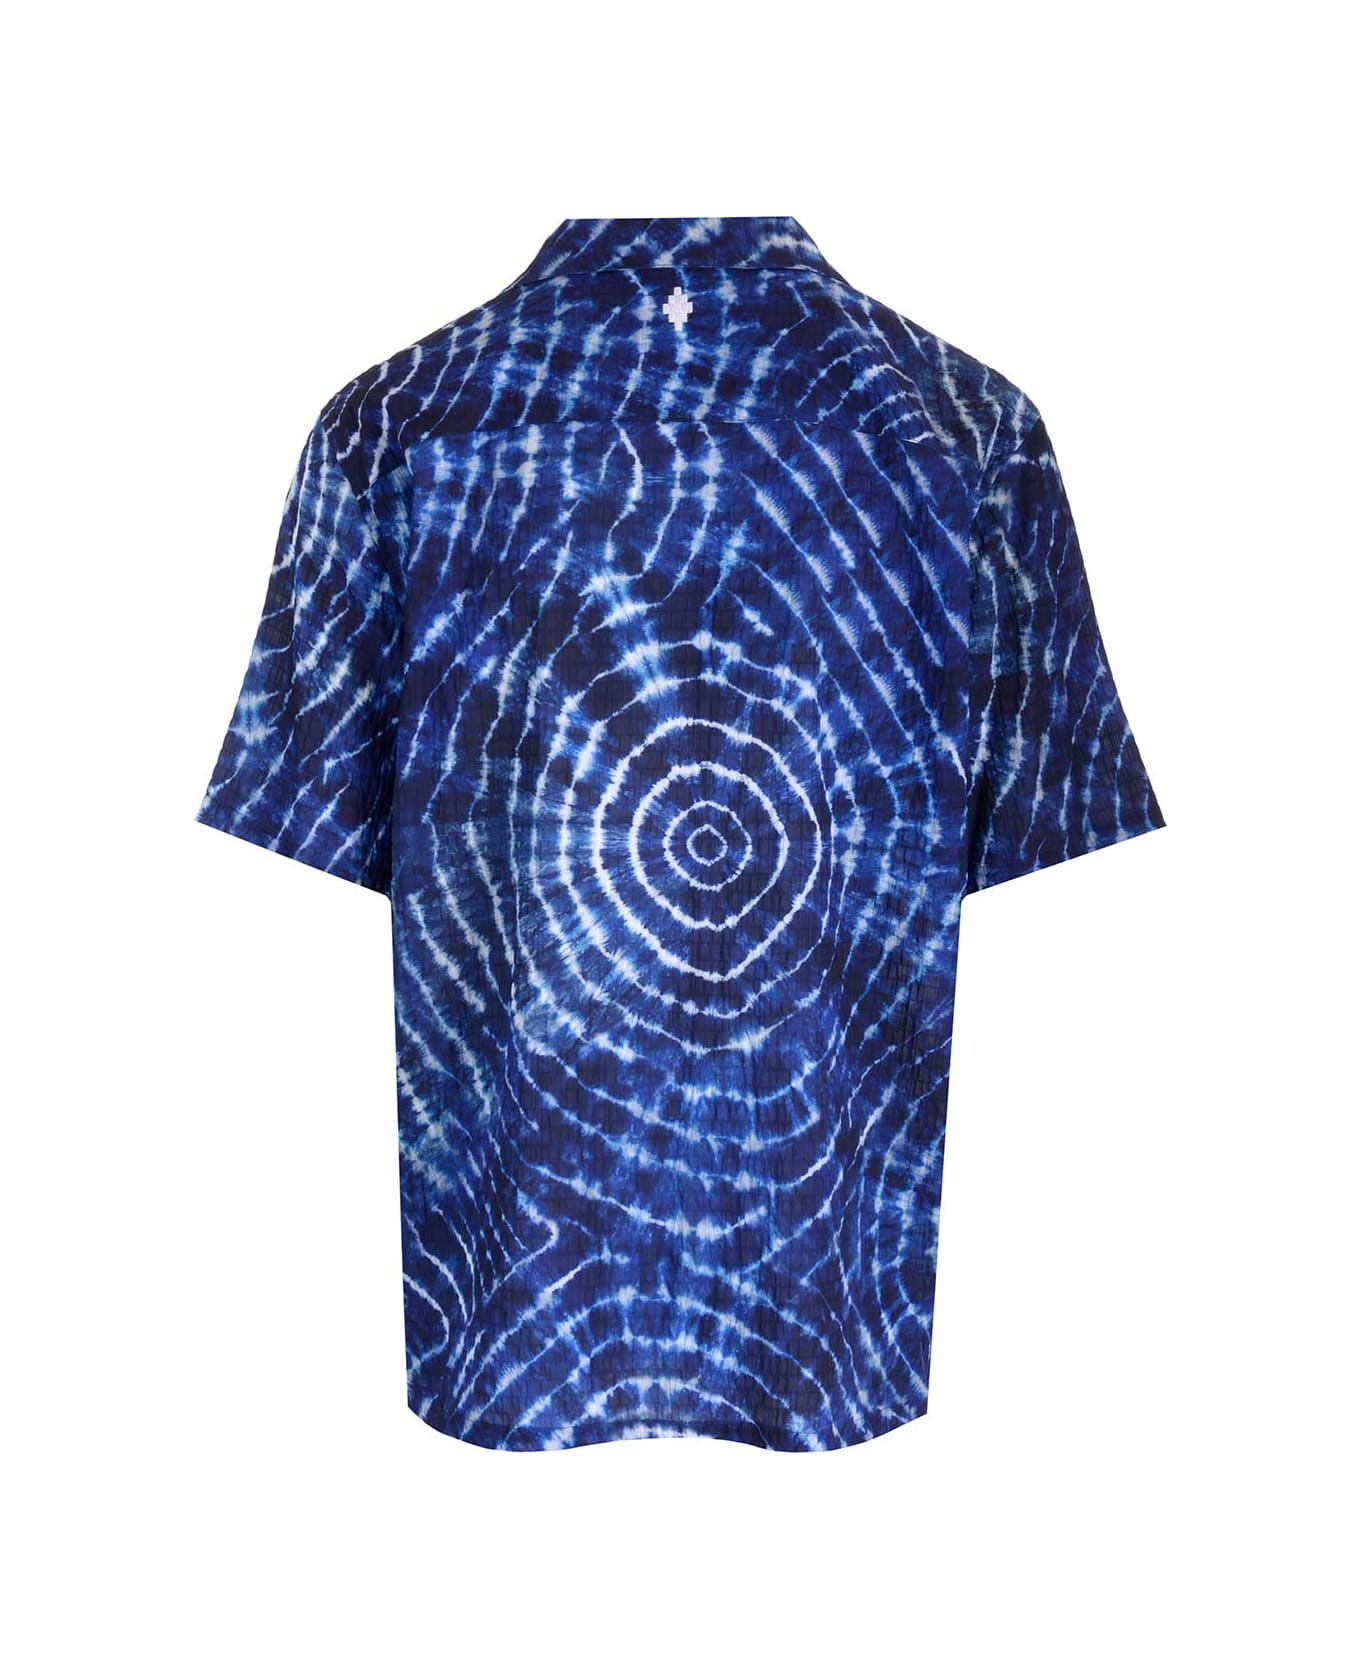 Marcelo Burlon 'soundwaves' Shirt - Blue